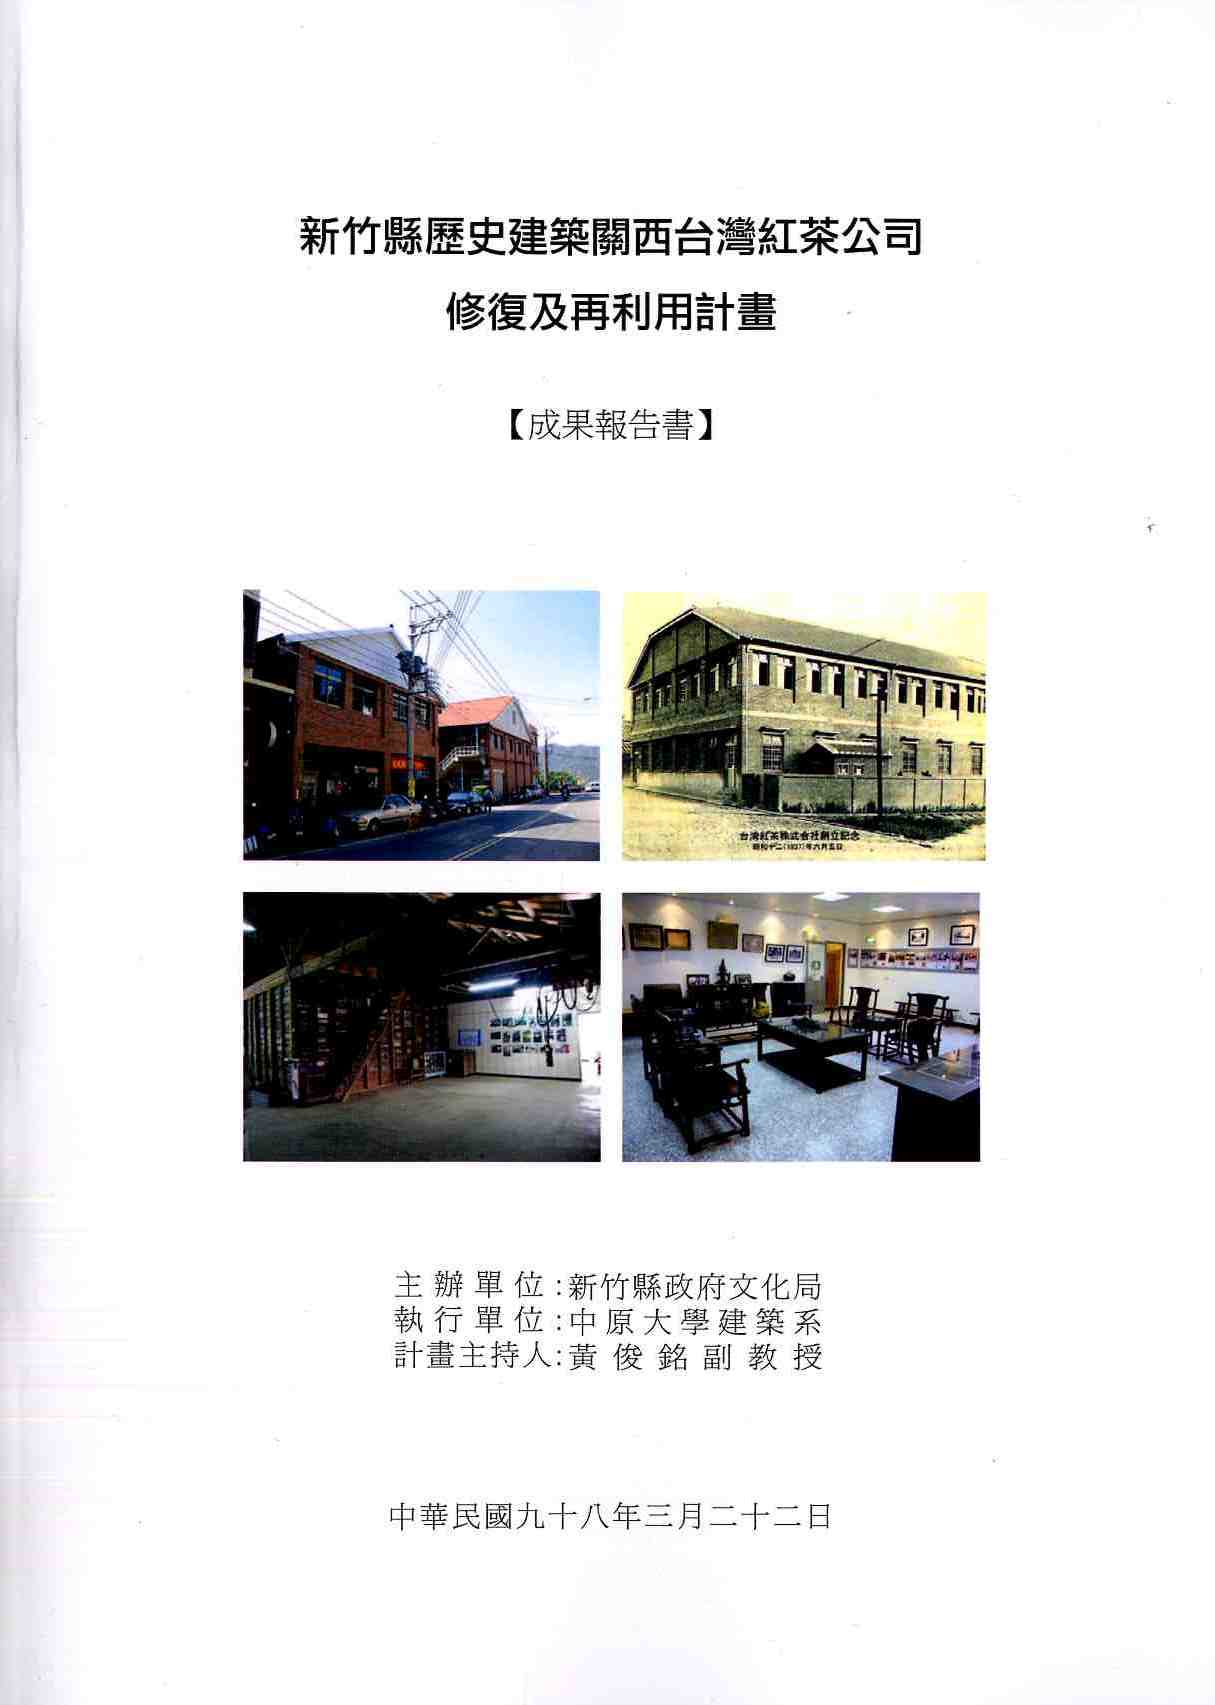 新竹縣歷史建築關西台灣紅茶公司修復及再利用計畫